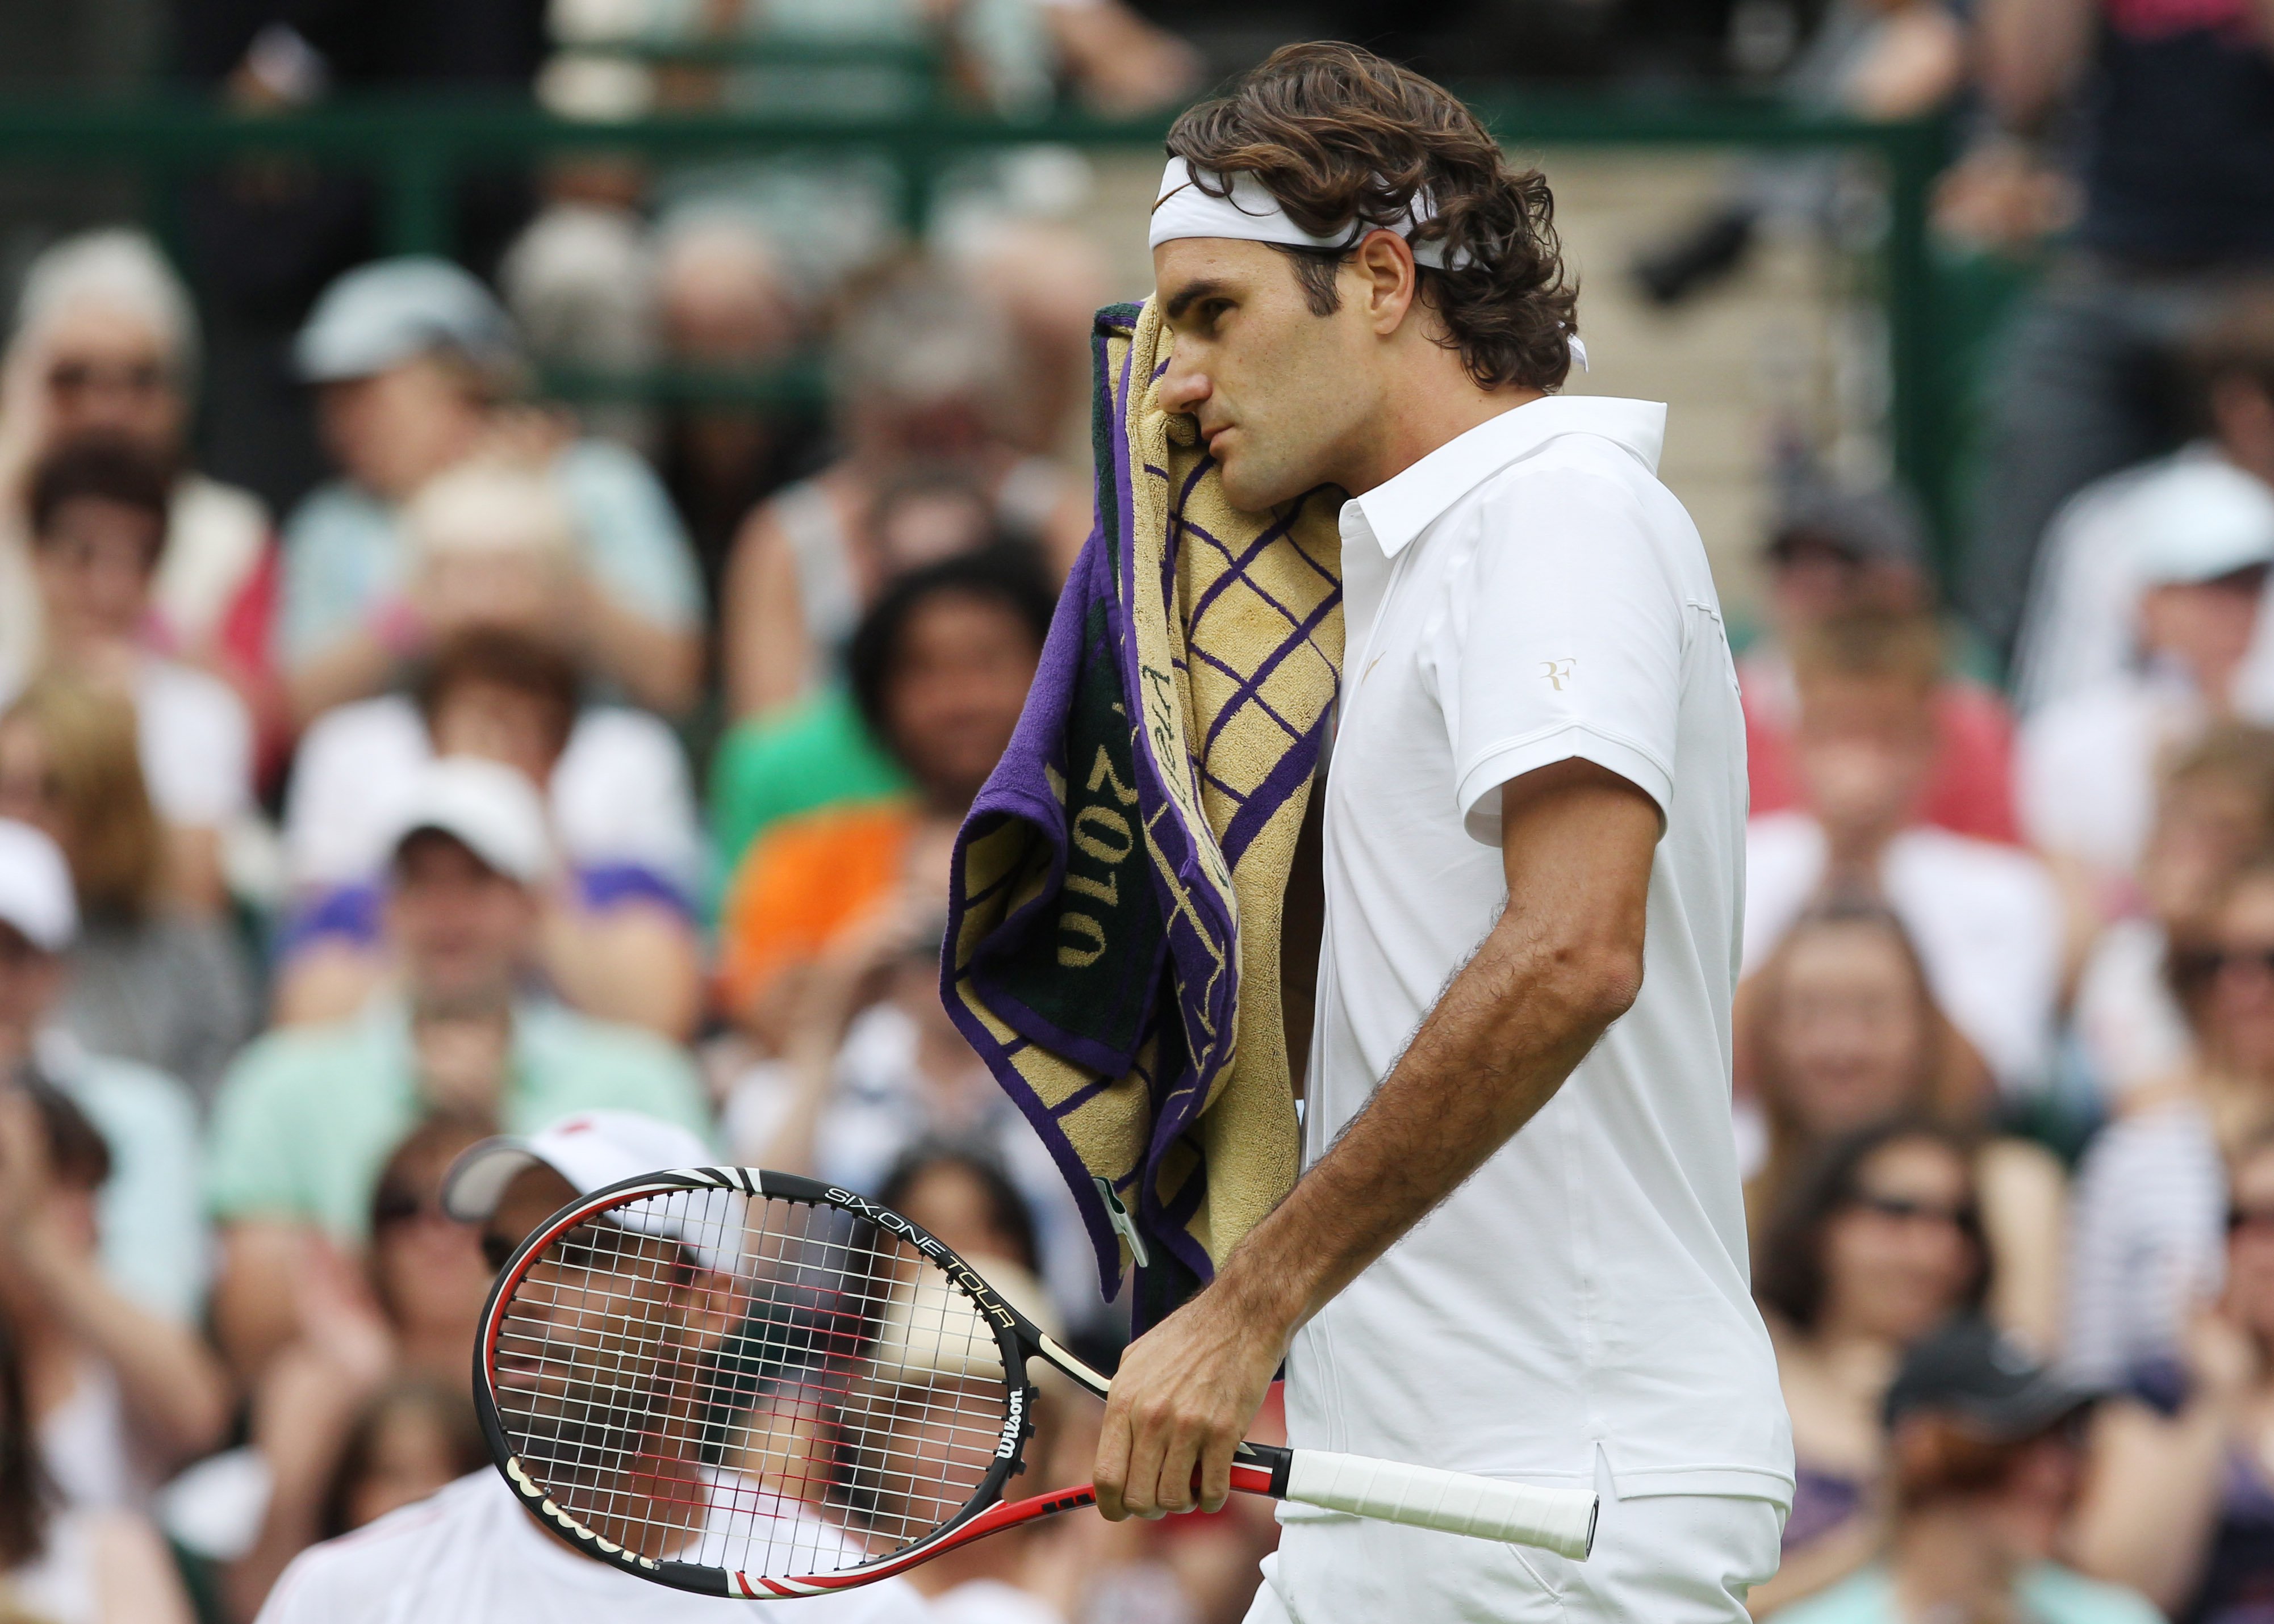 ATP, Tennis, Roger Federer